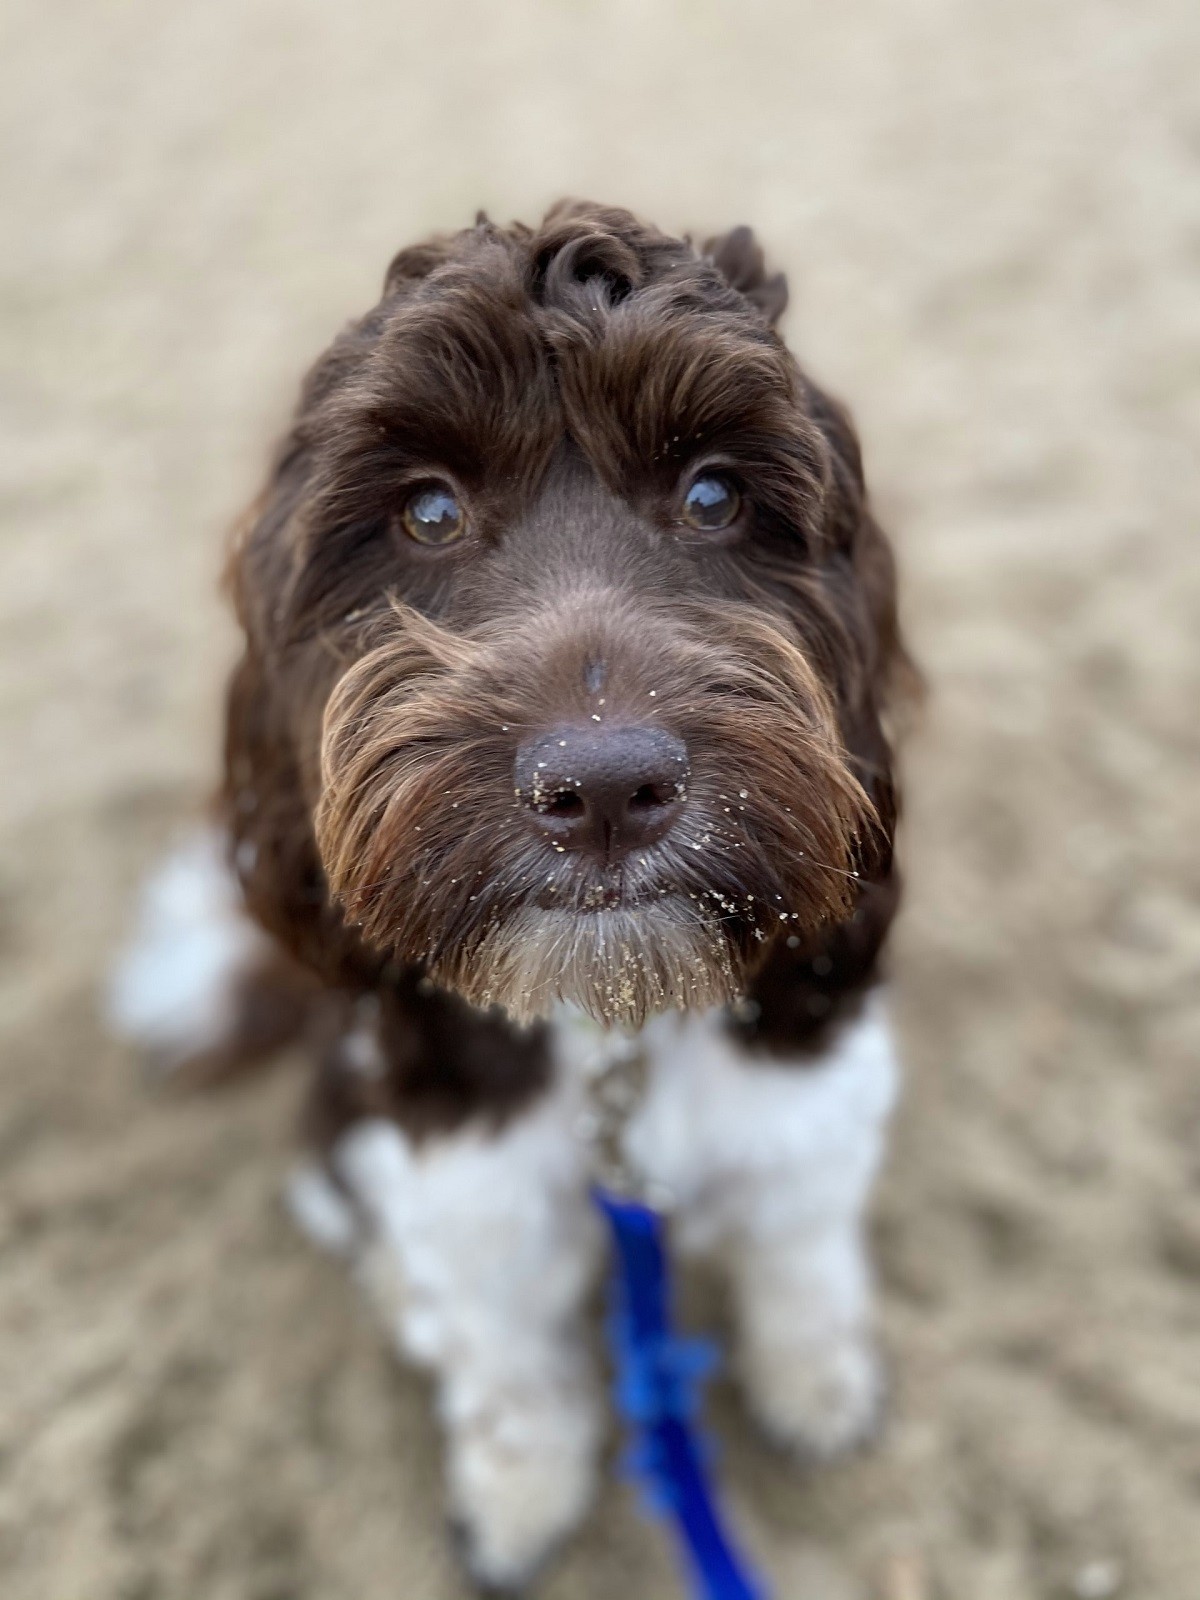 Após o passeio na praia, lembre-se de dar banho no cachorro, limpar as orelhas e banhar os olhos com soro fisiológico (Foto: Unsplash/ CreativeCommons)